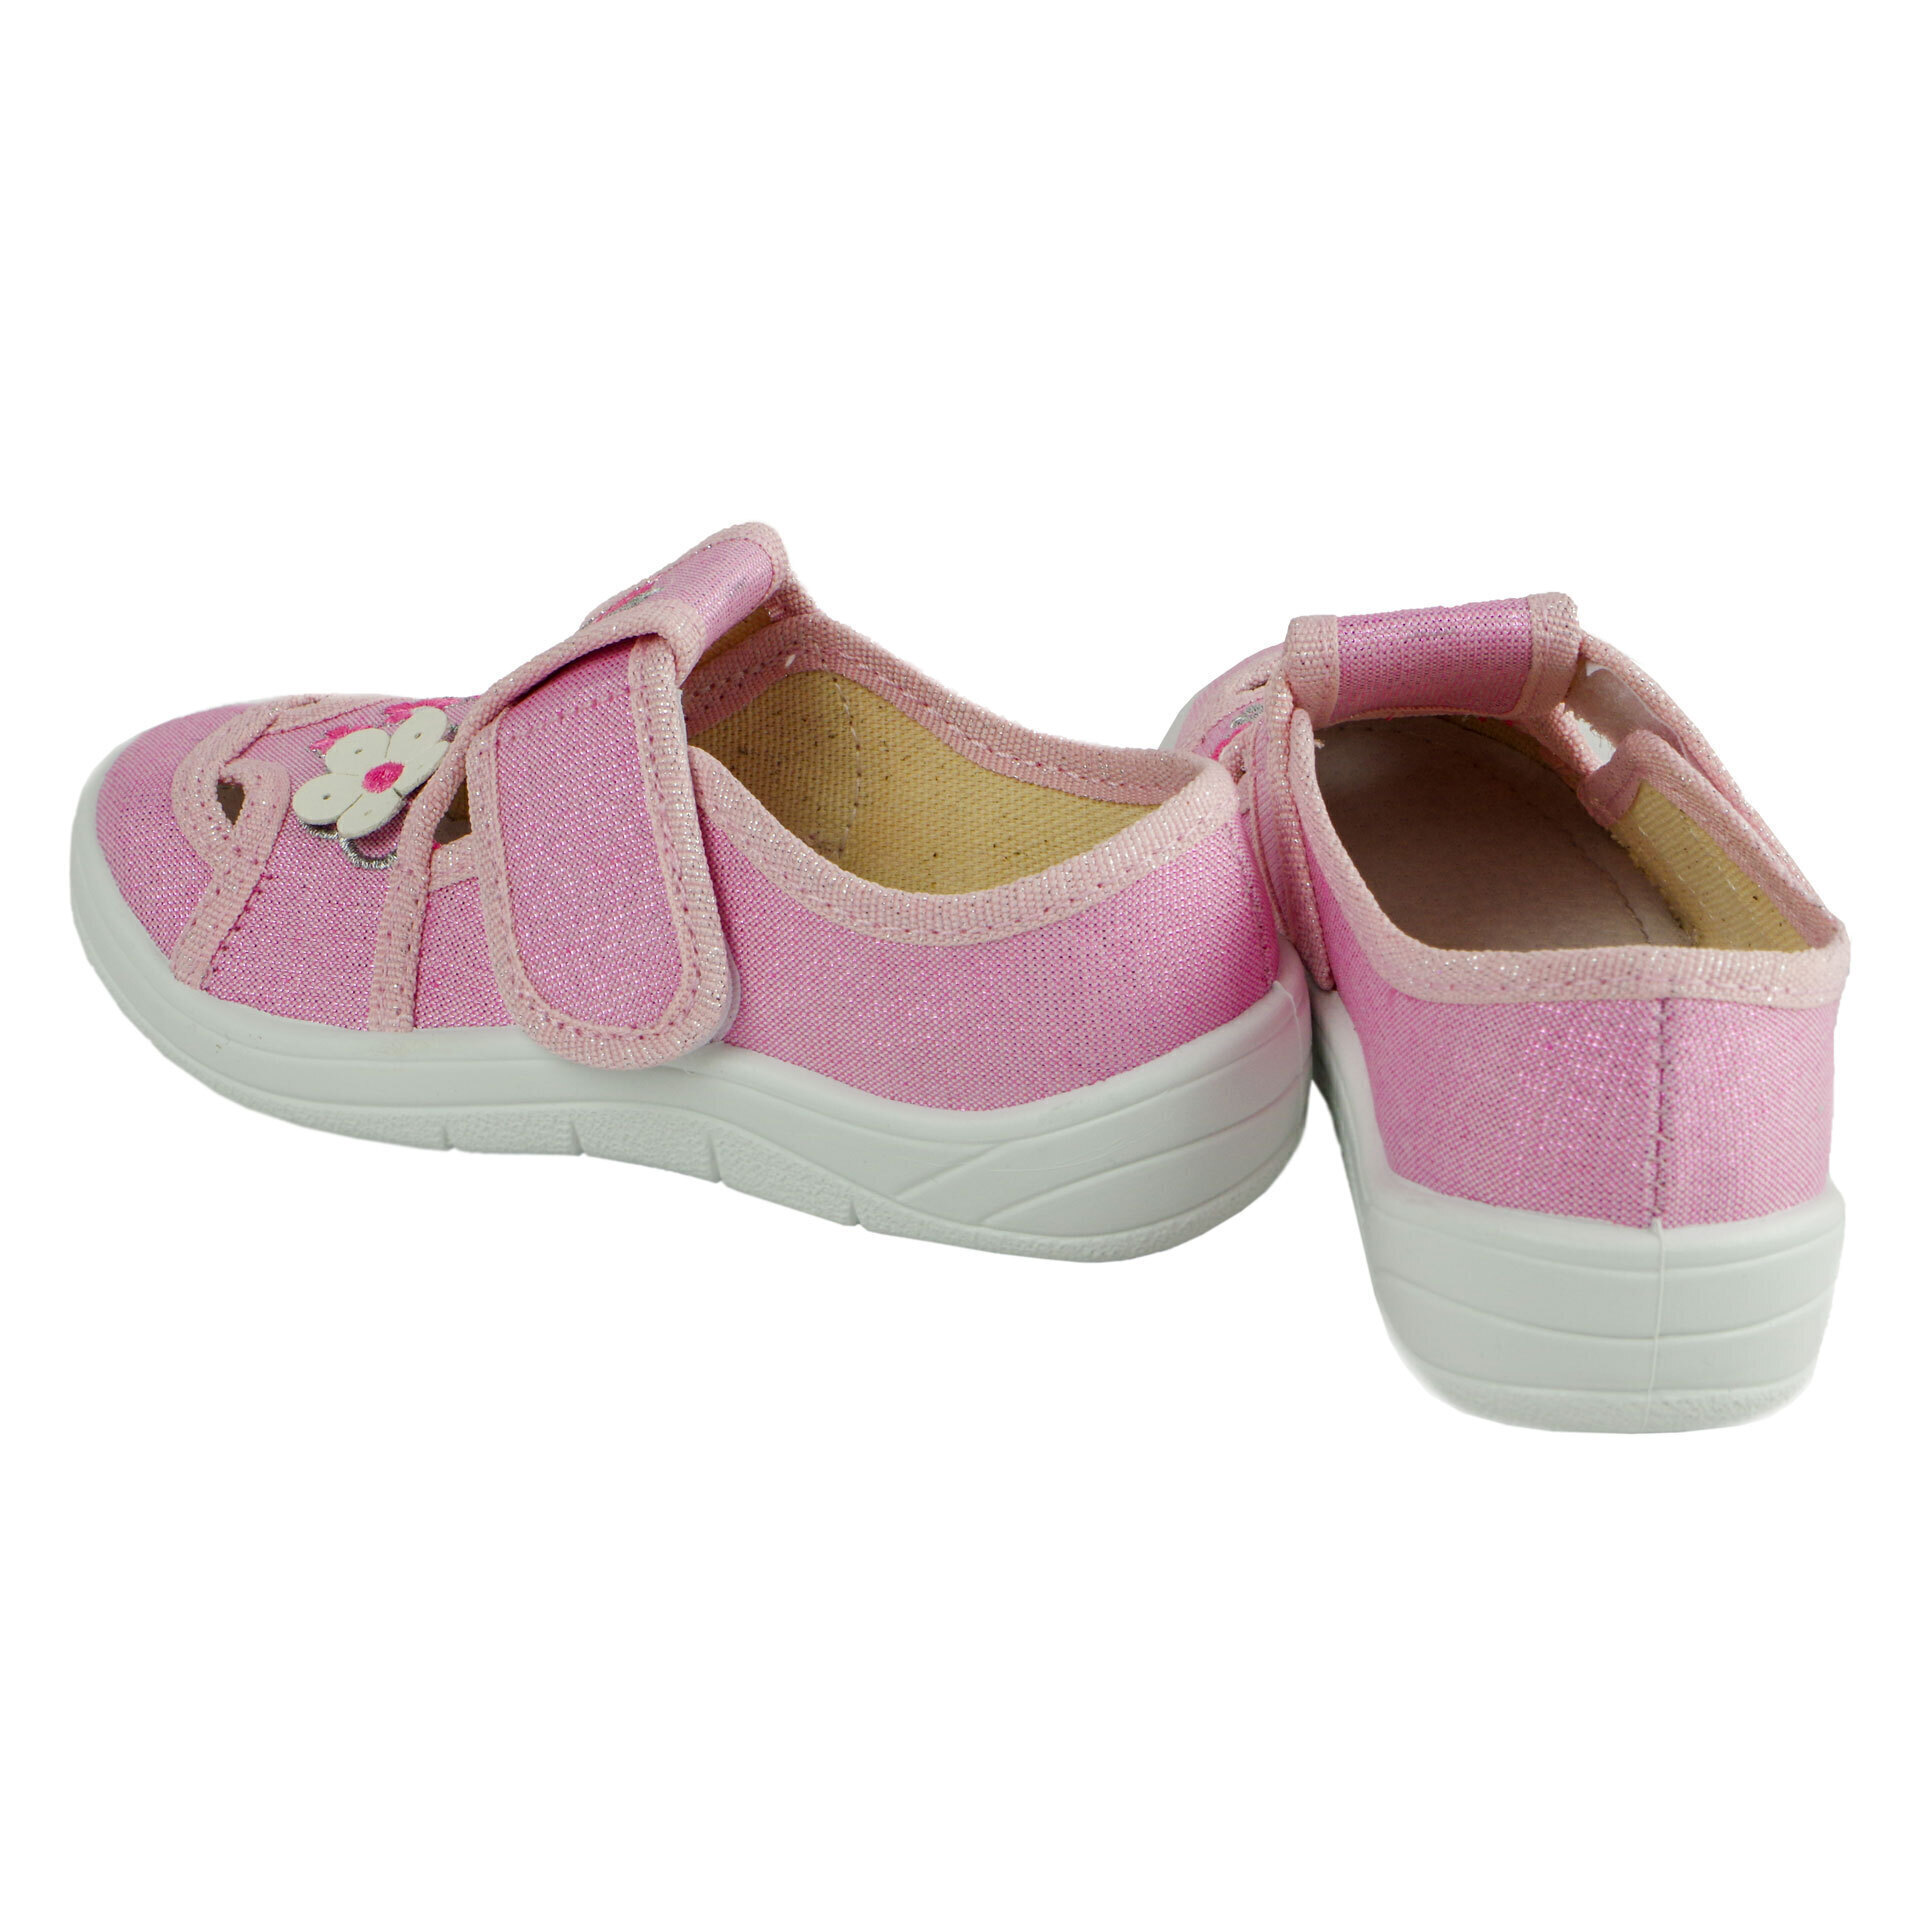 Текстильная обувь для девочек Тапочки Мила (2039) цвет Розовый 24-30 размеры – Sole Kids. Фото 4